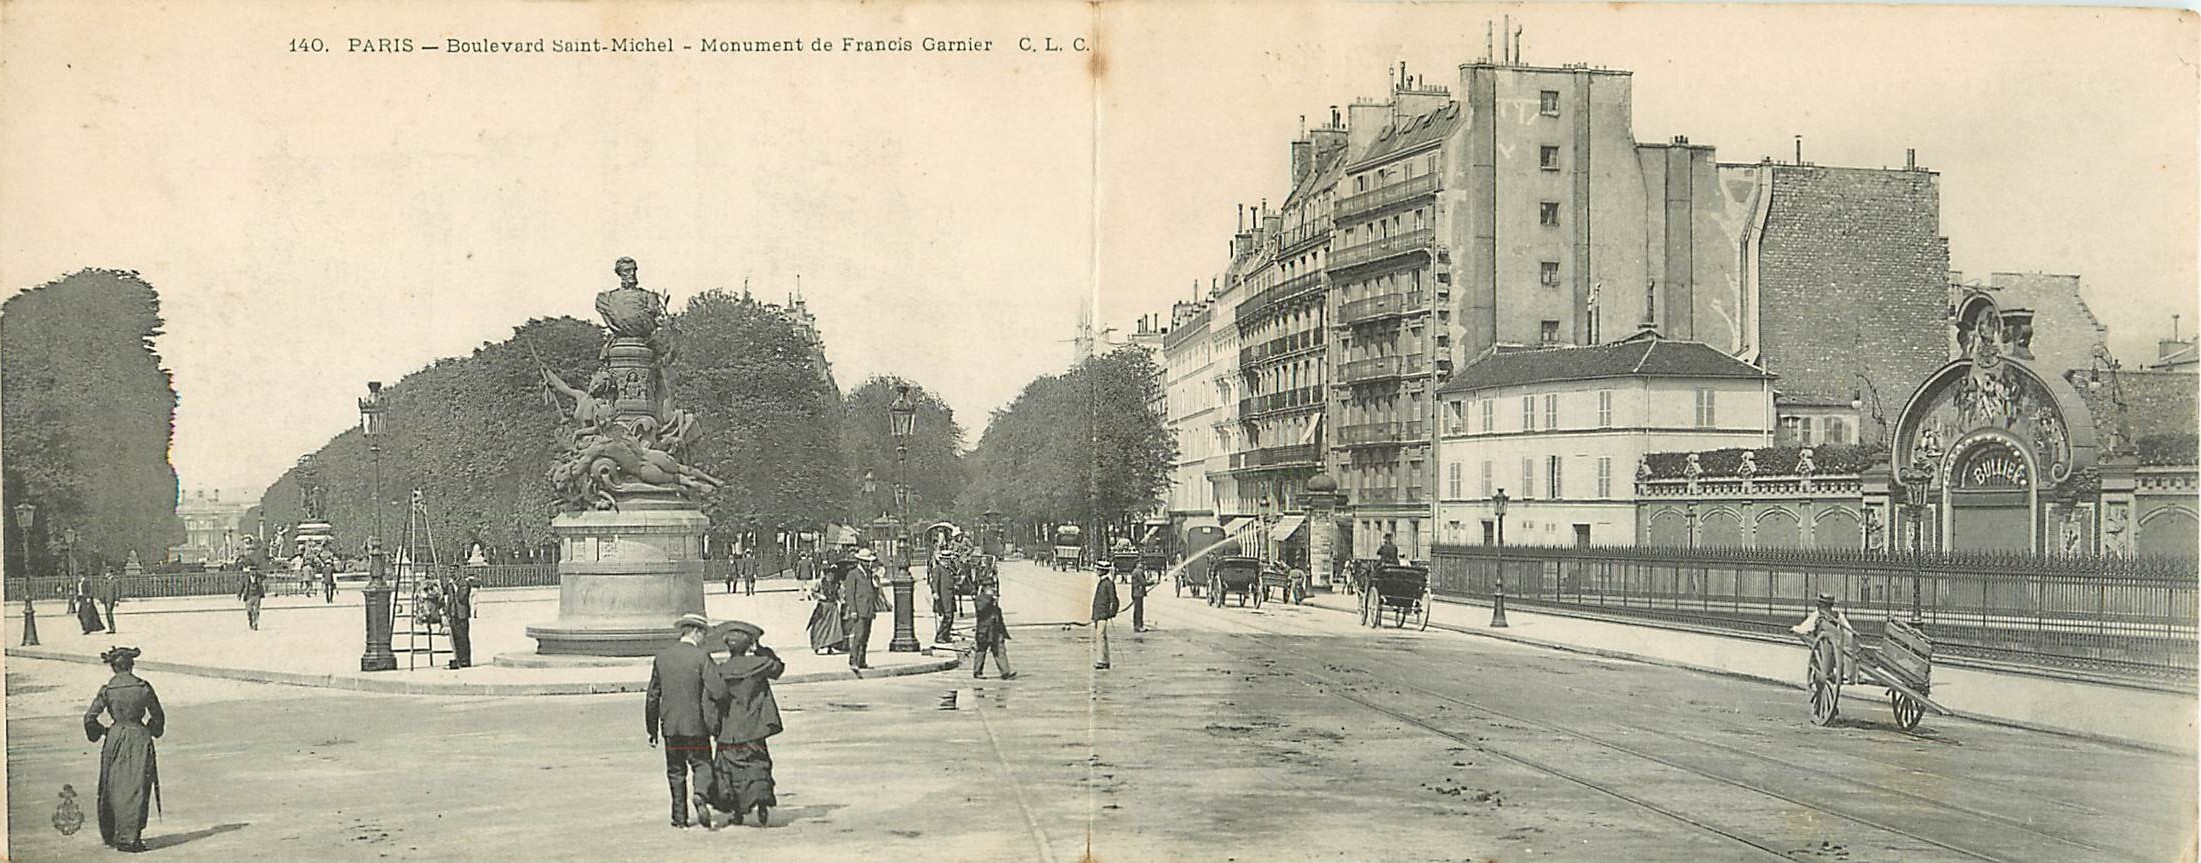 WW PARIS V. Le Bal Bullier et monument Garnier Boulevard Saint-Michel 1917